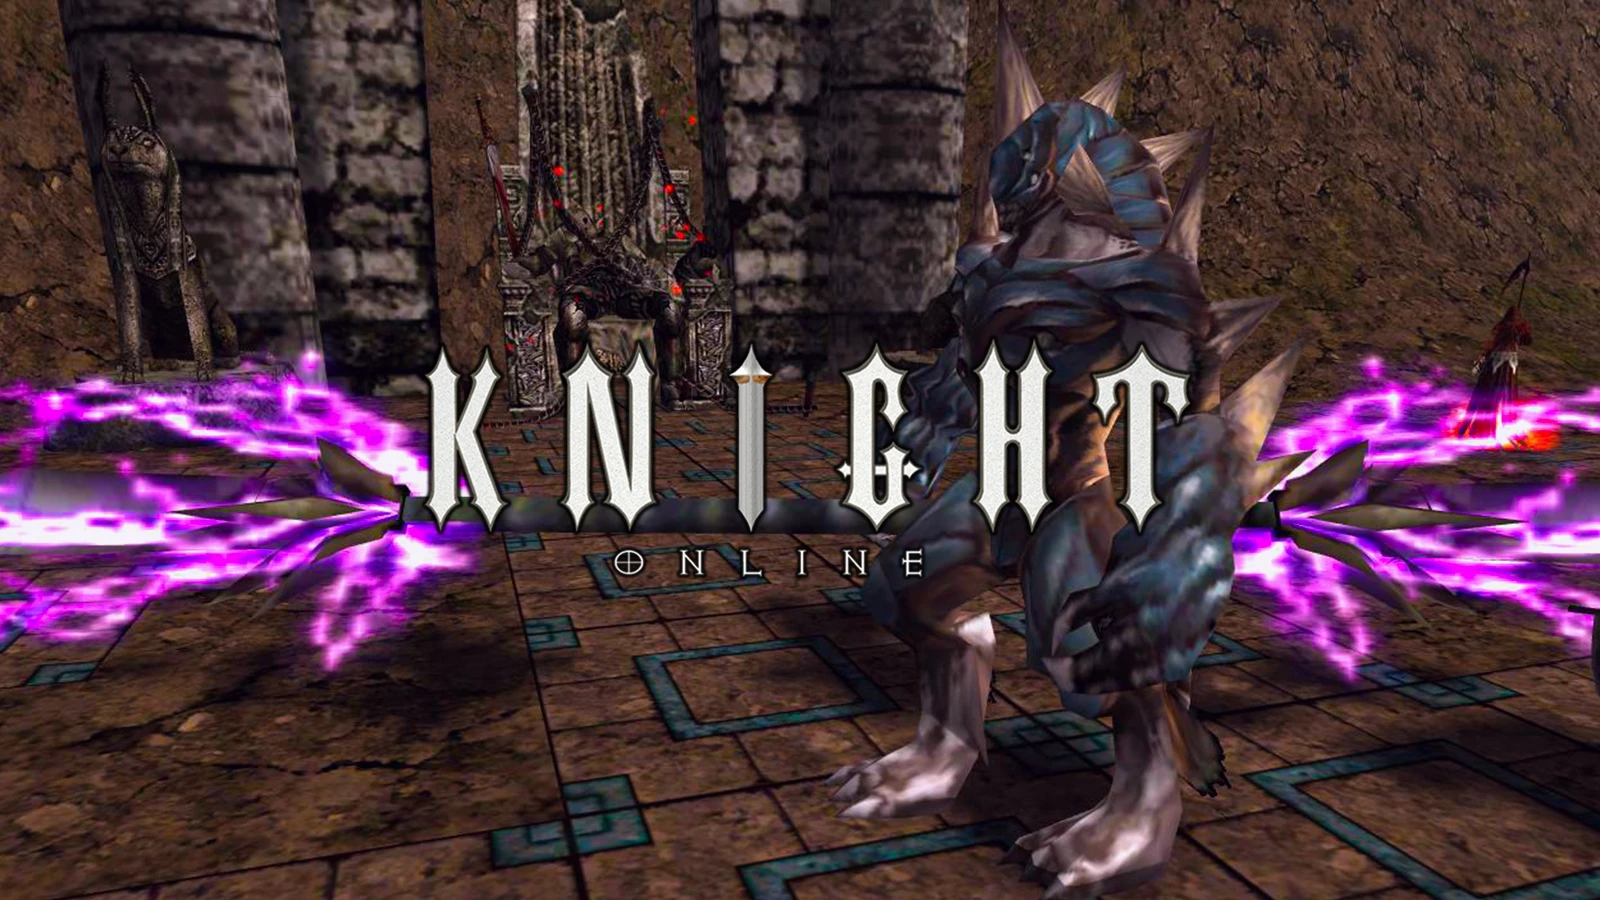 Knight Online Etkinlik Saatleri 2023